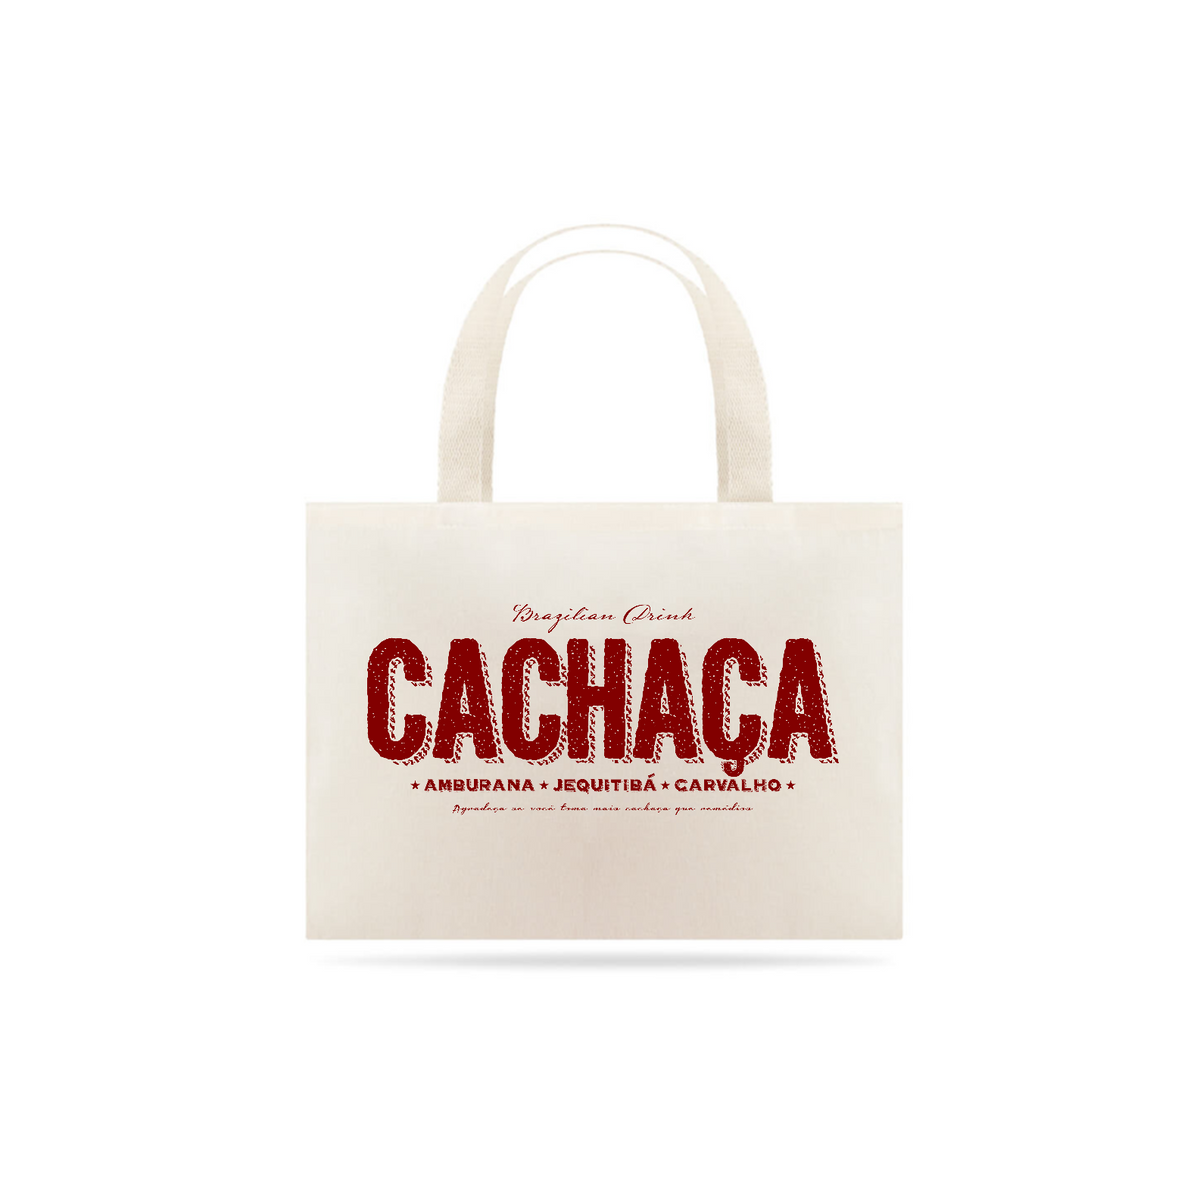 Nome do produto: Cachaça Brazilian Drink - Ecobag